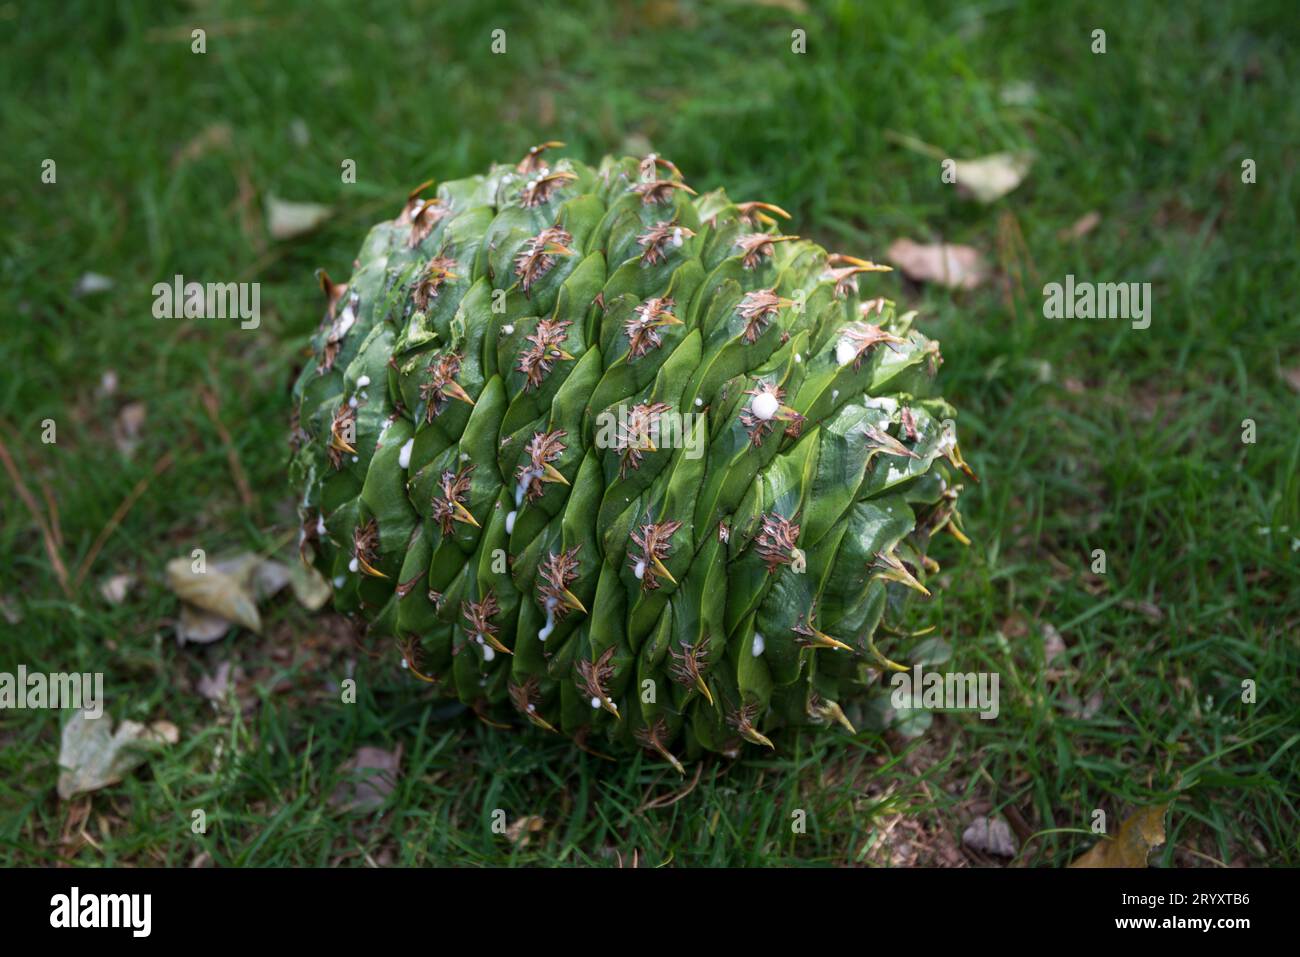 Intakter grüner Bunya-Kiefernkegel, der im Gras liegt, nachdem er vom Baum gefallen ist Stockfoto